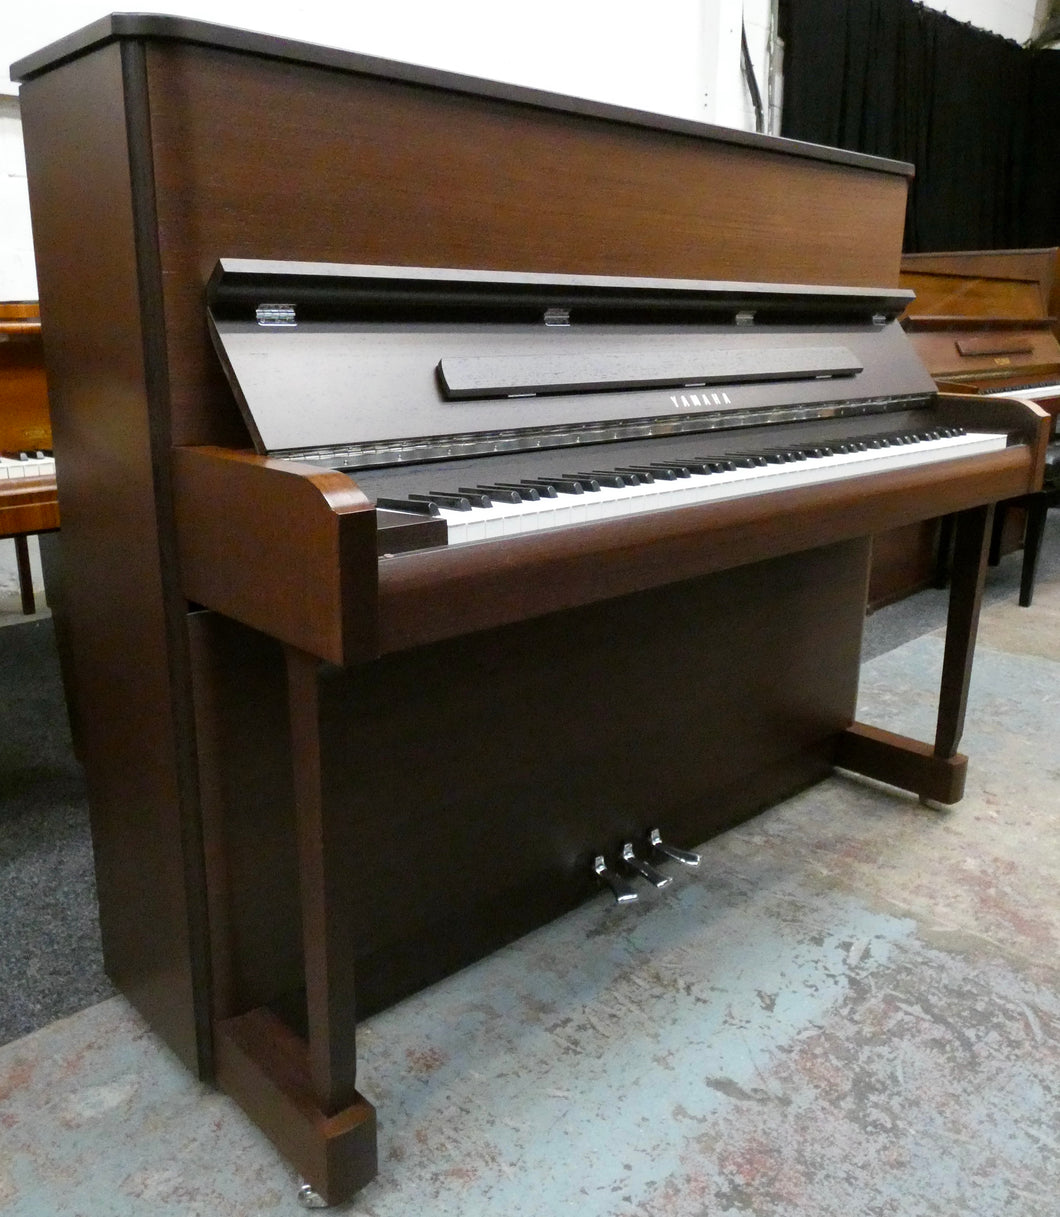 Yamaha Radius 3 Upright Piano in Wenge Cabinetry